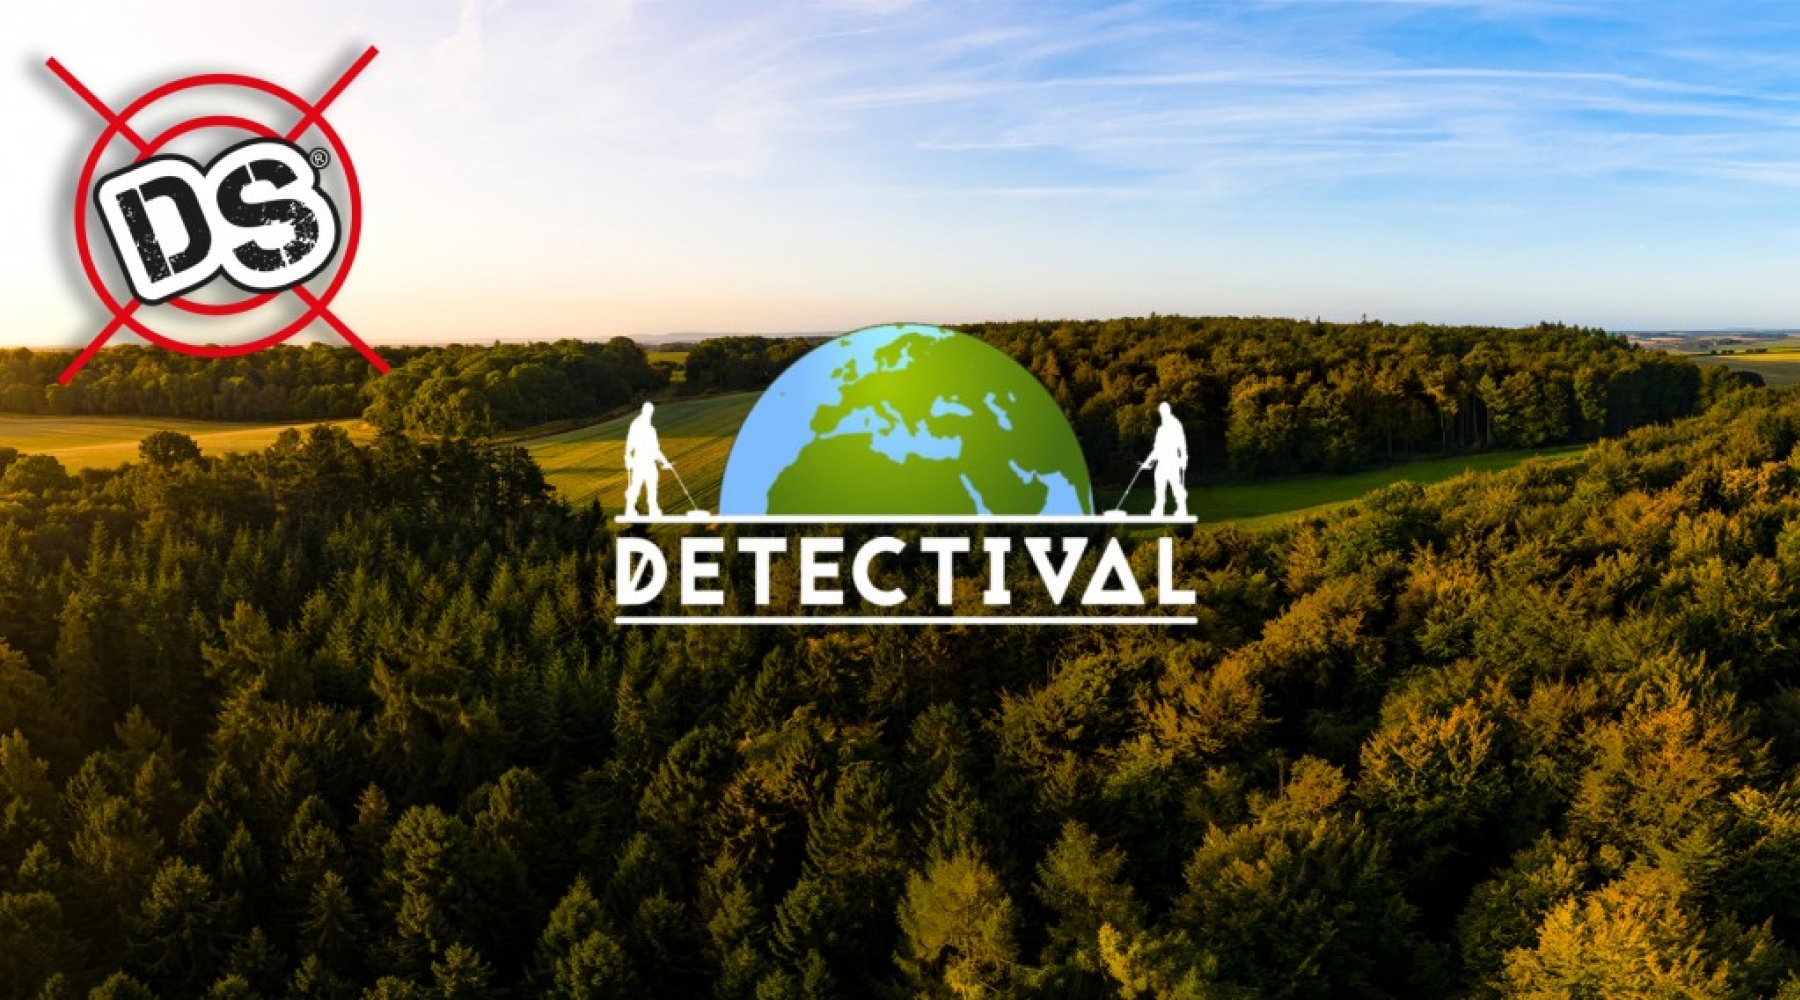 Benvenuti a “Detectival”, il famoso evento dedicato al metal detecting in UK